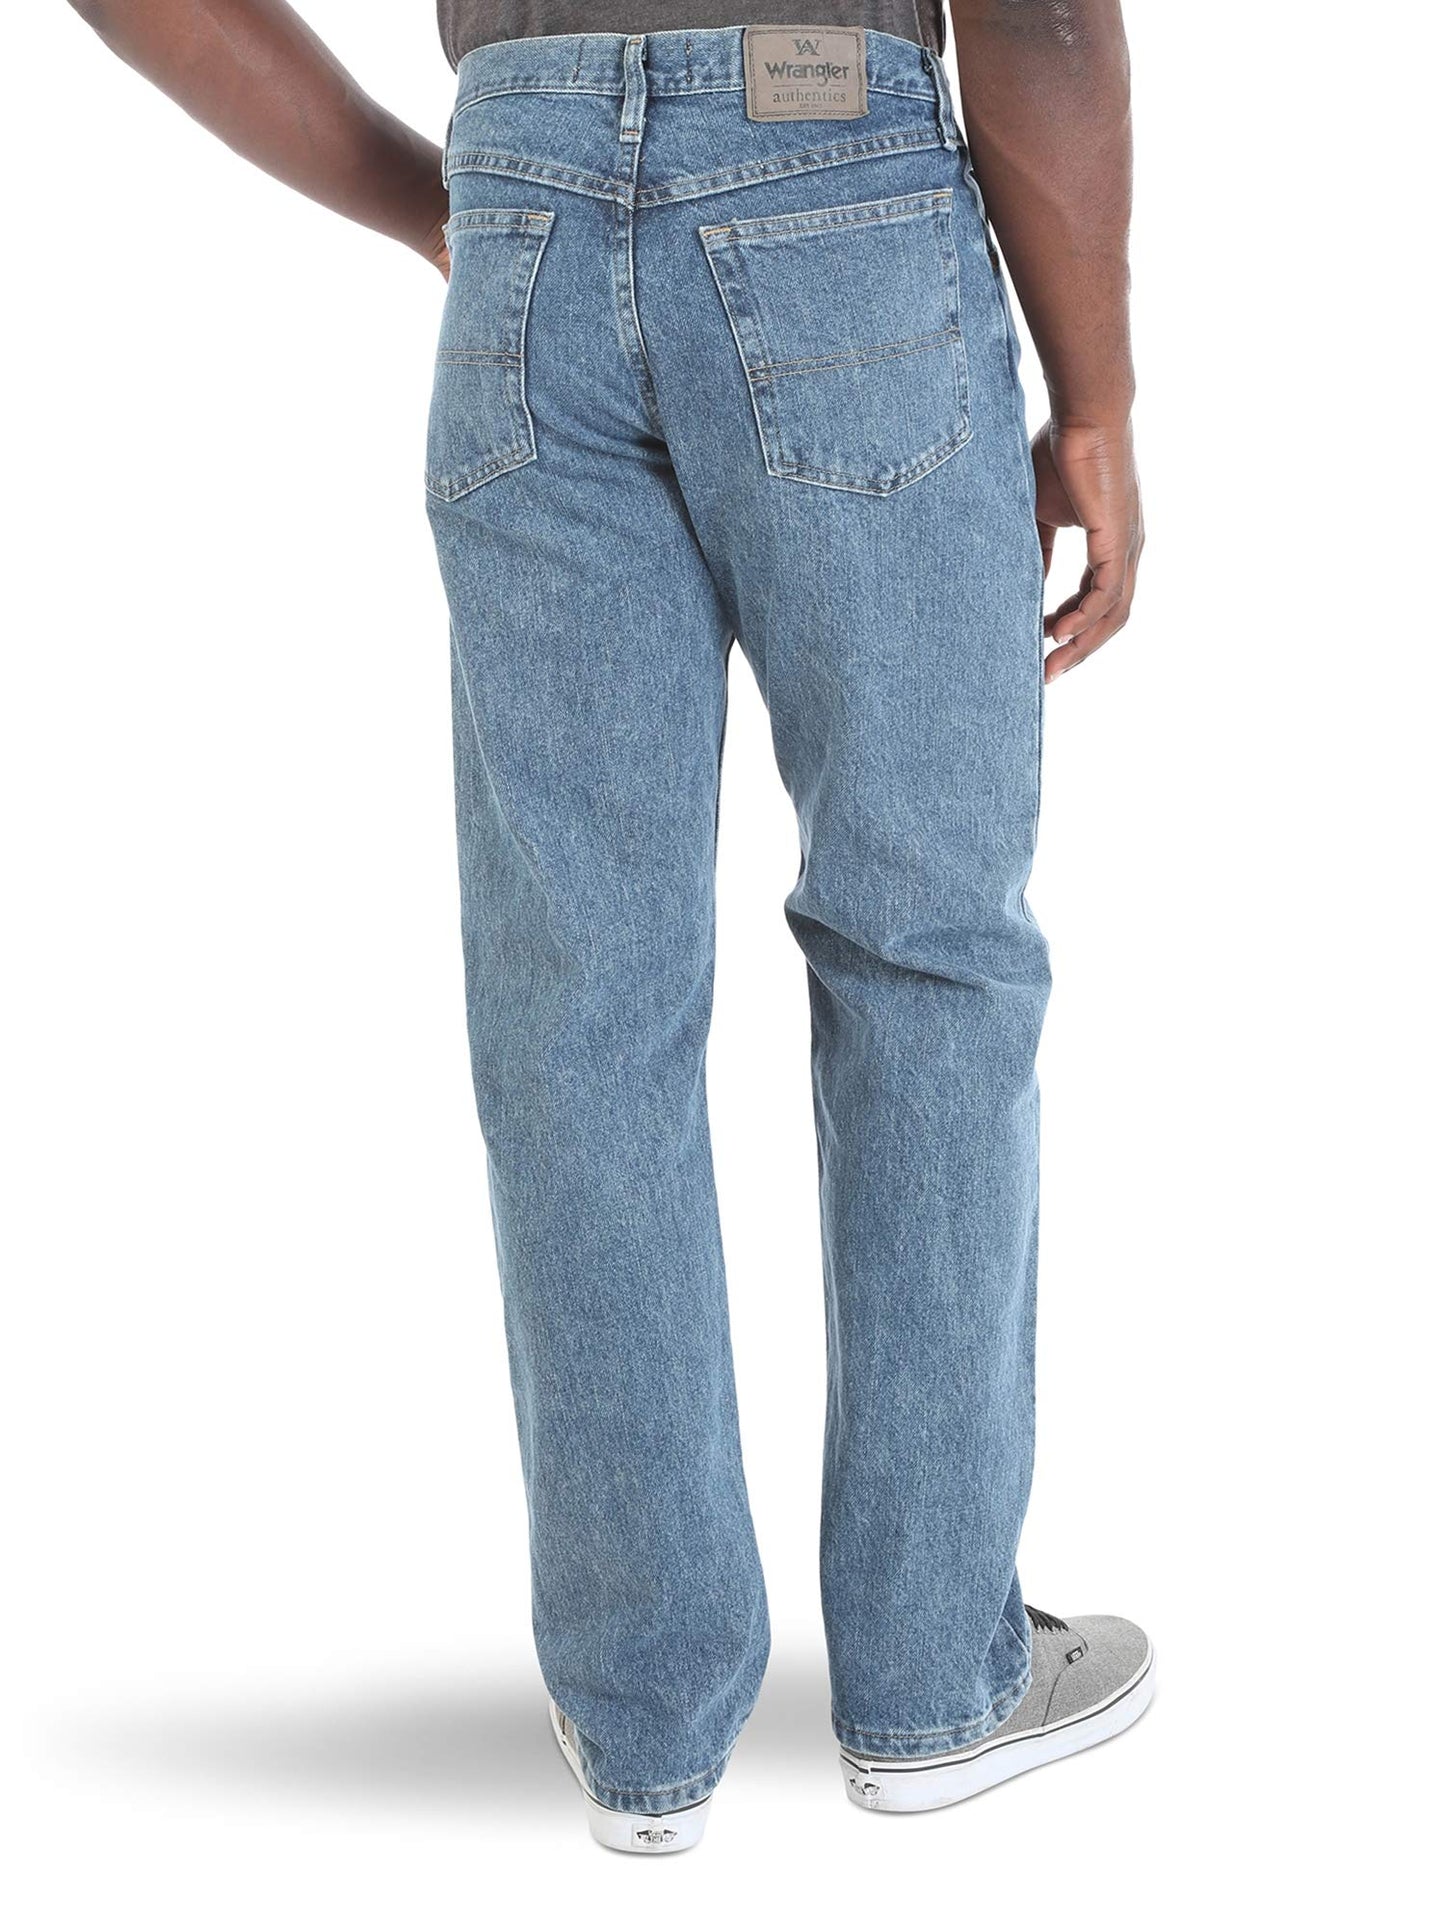 Wrangler Authentics Men's Classic 5-Pocket Relaxed Fit Cotton Jean, Vintage Stonewash, 42W x 32L